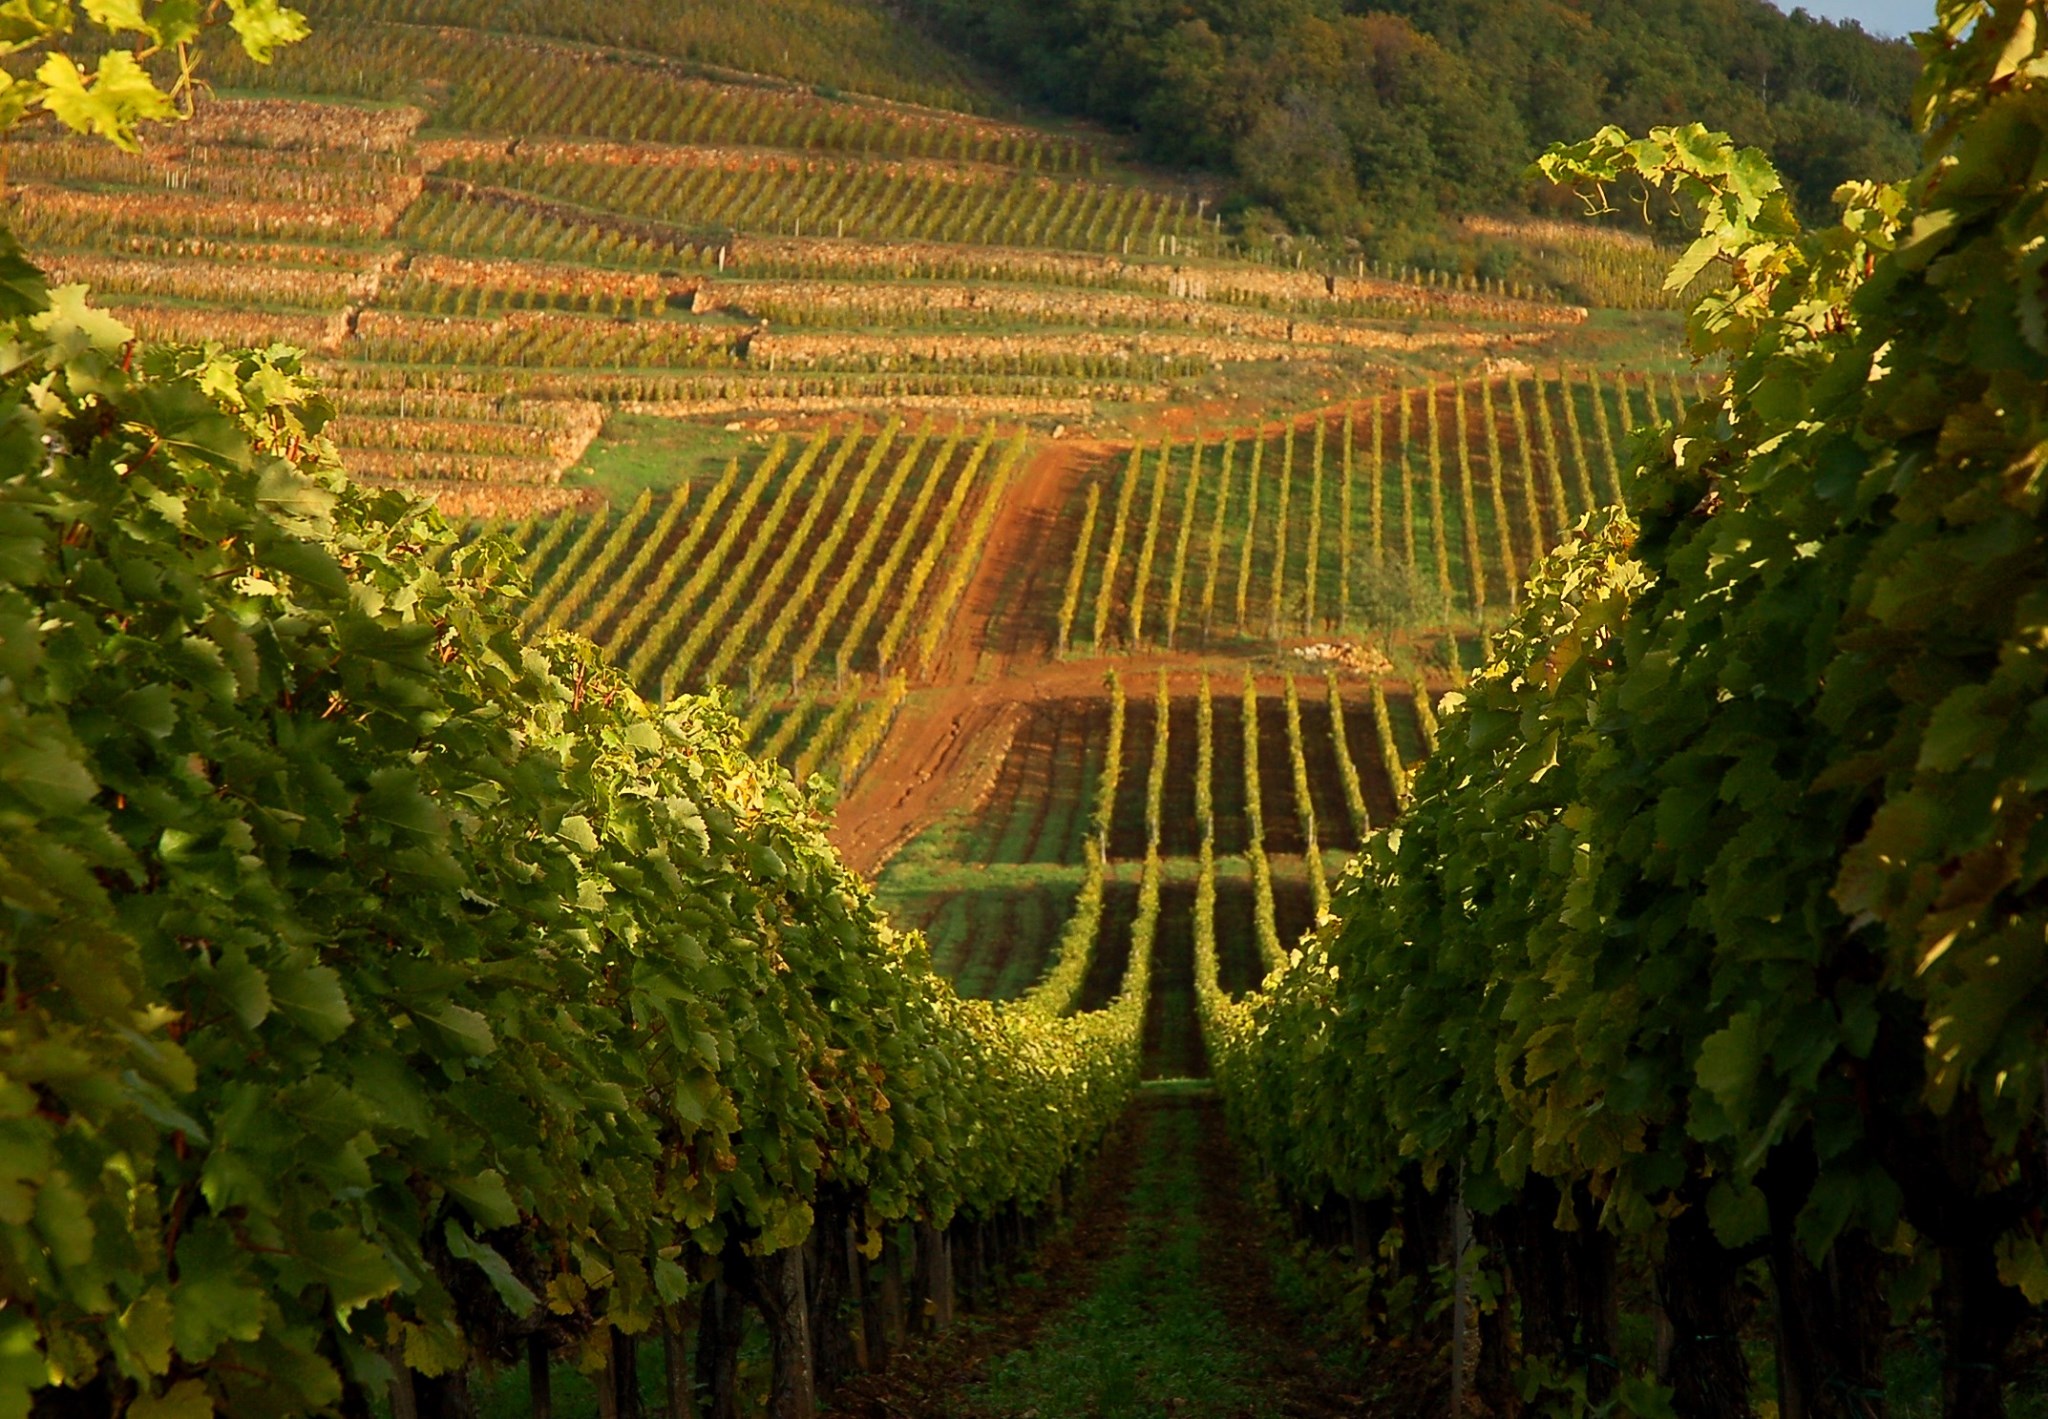 Tokaj Wine Region